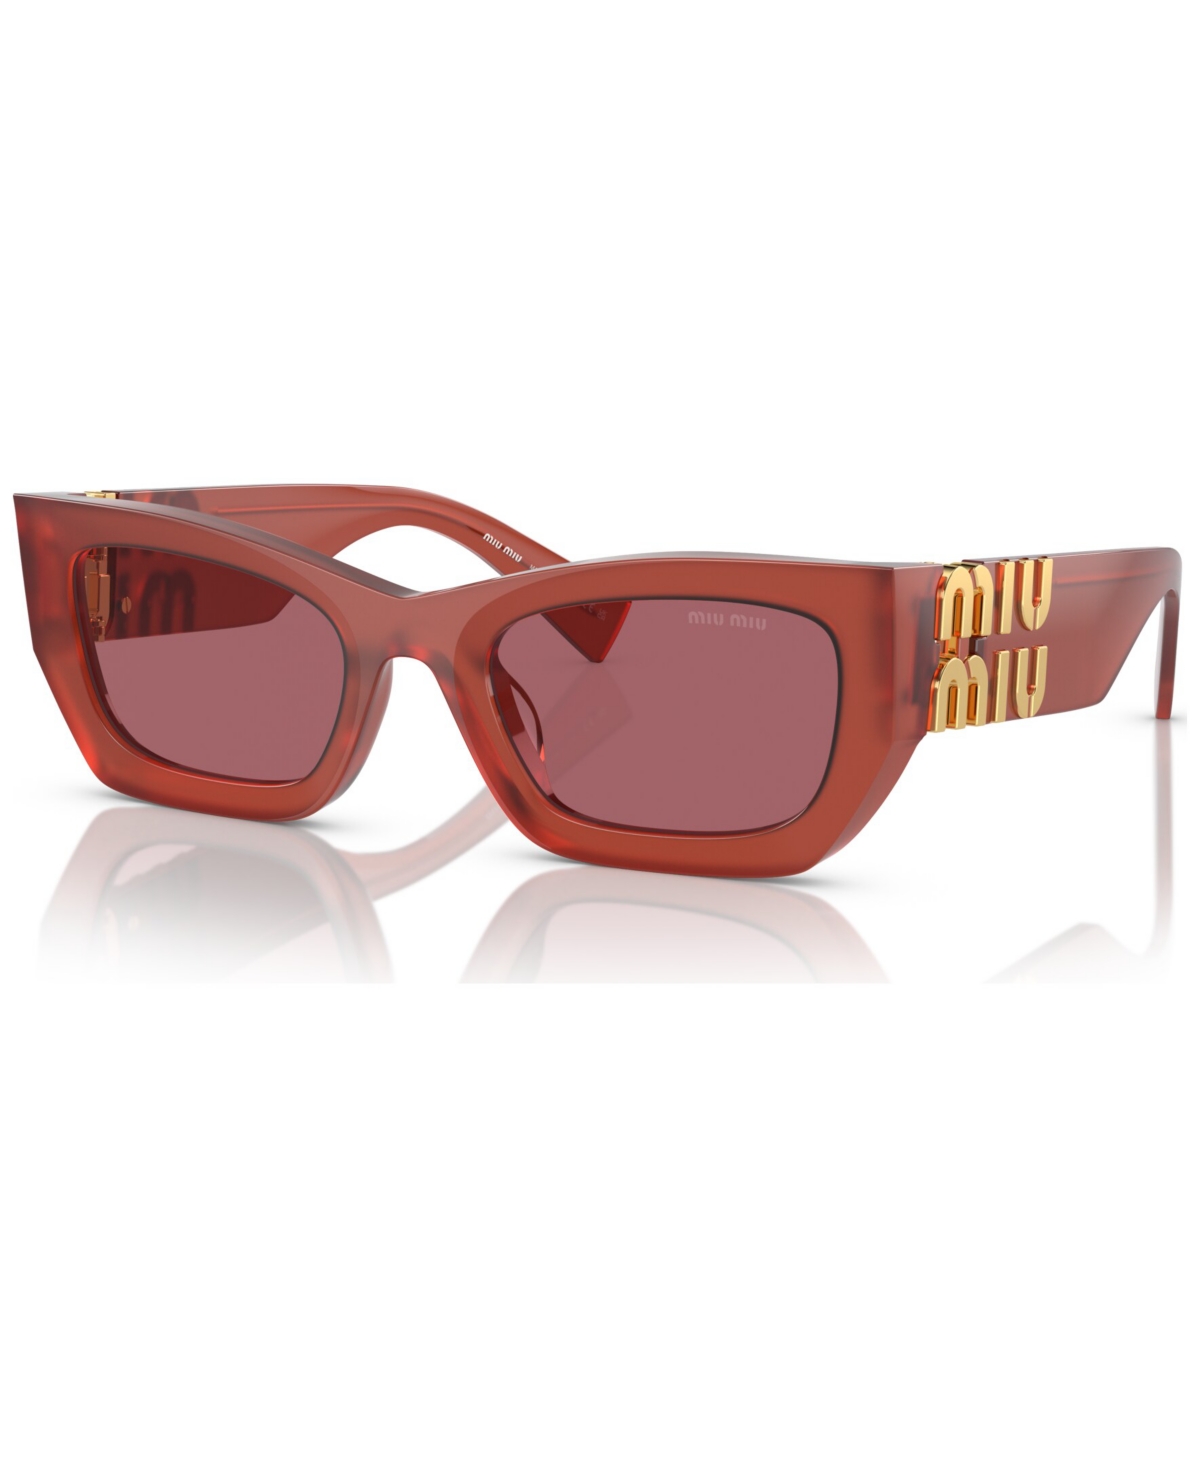 Miu Miu Mu 09ws Rectangular Sunglasses, 53mm In Dark Violet